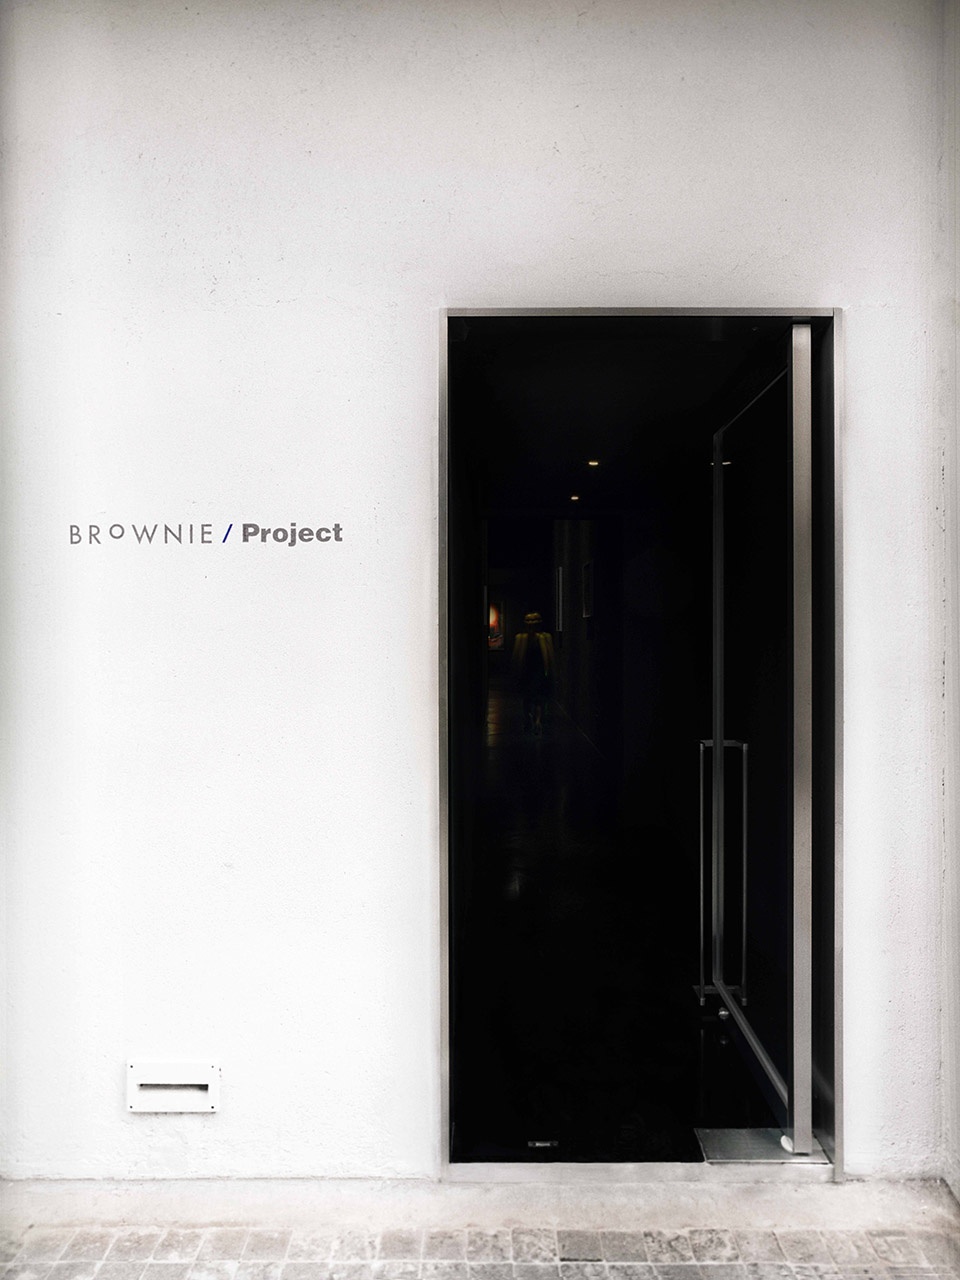 畫廊設計,咖啡廳設計,展廳設計,上海畫廊設計,BROWNIE/Project畫廊,上海BROWNIE/Project畫廊,BROWNIE/Project,Offhand Practice